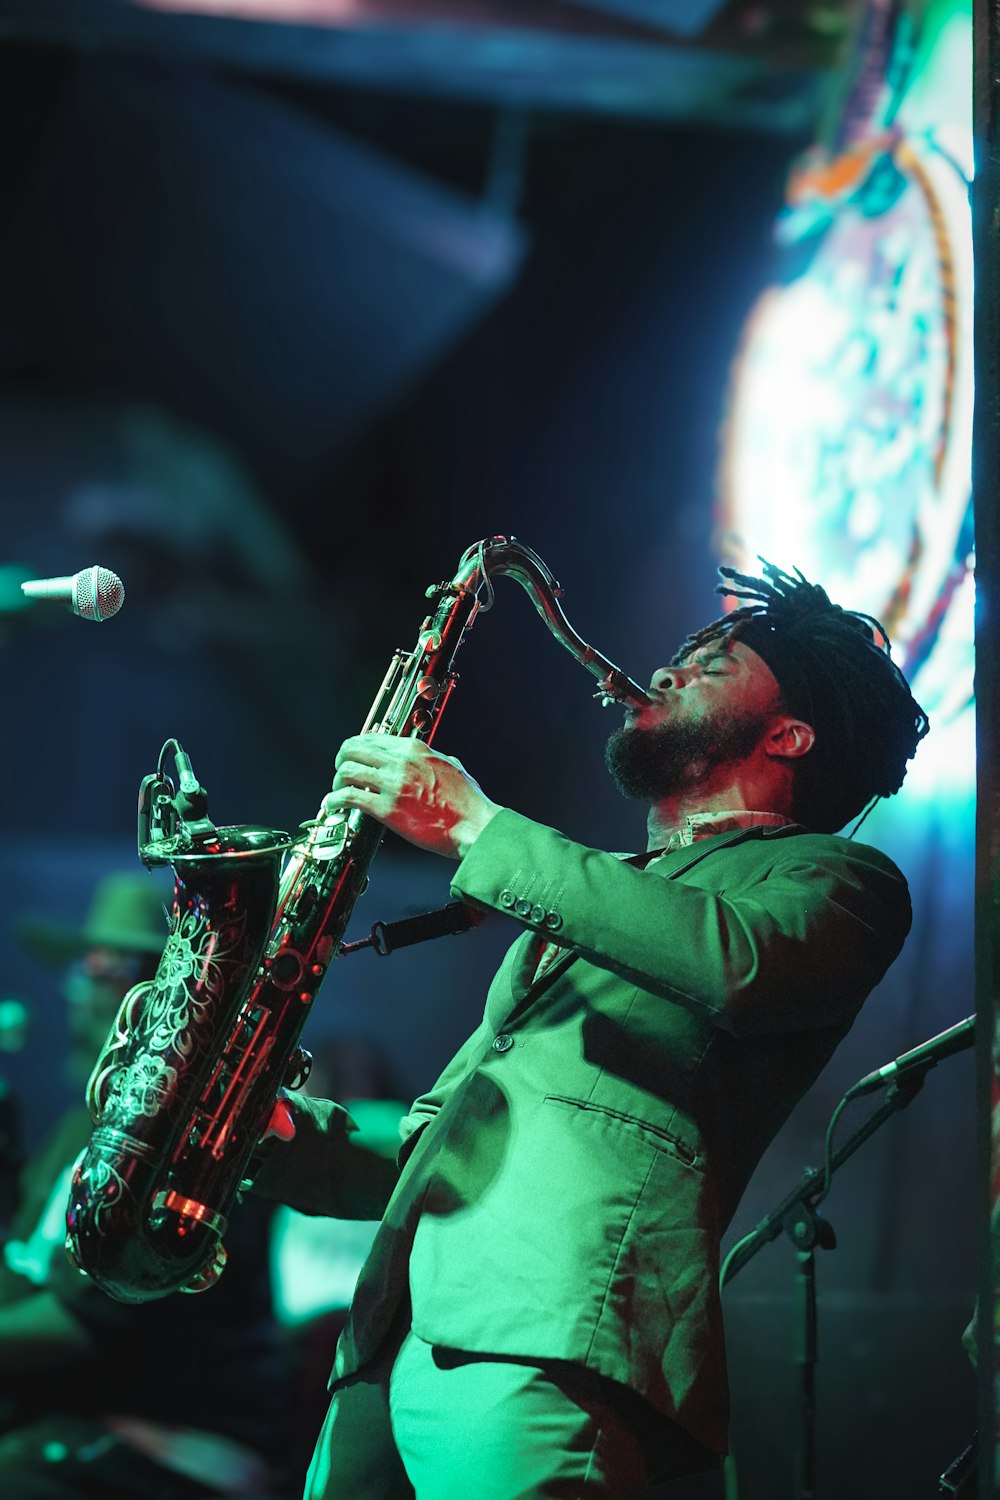 Un hombre con traje verde tocando un saxofón